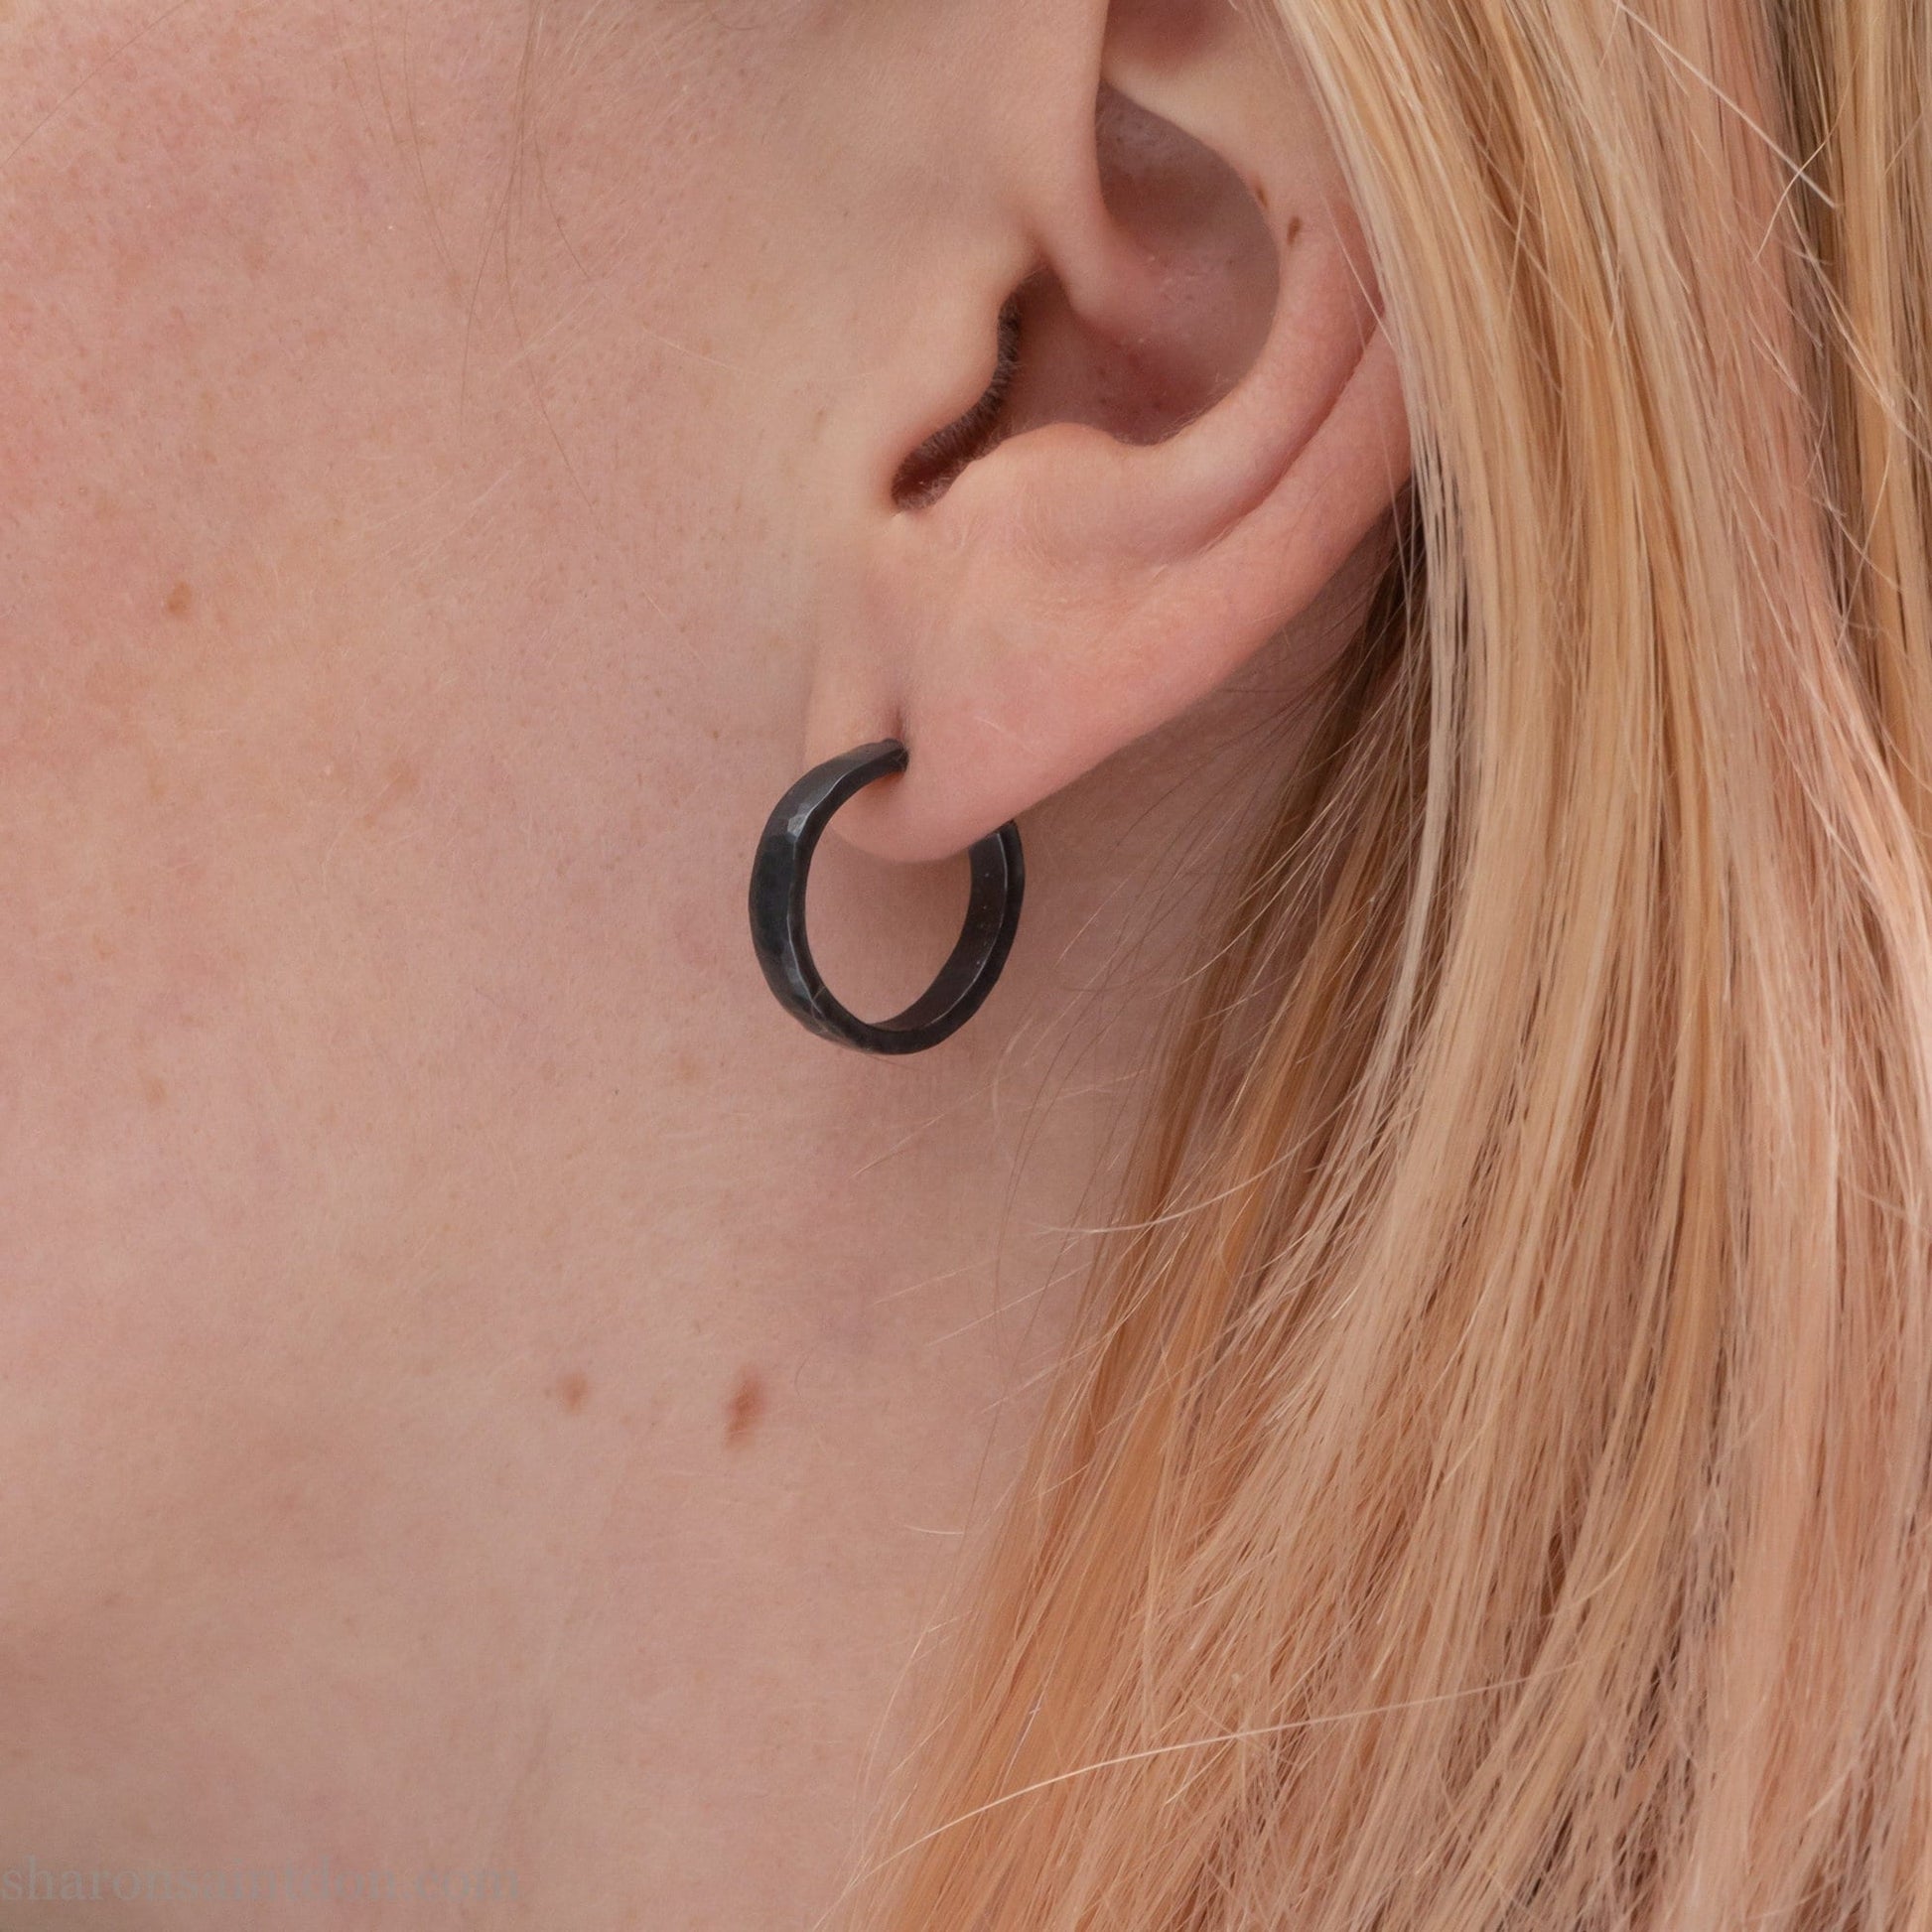 16 x 3mm 925 sterling silver hoop earrings, oxidized black.